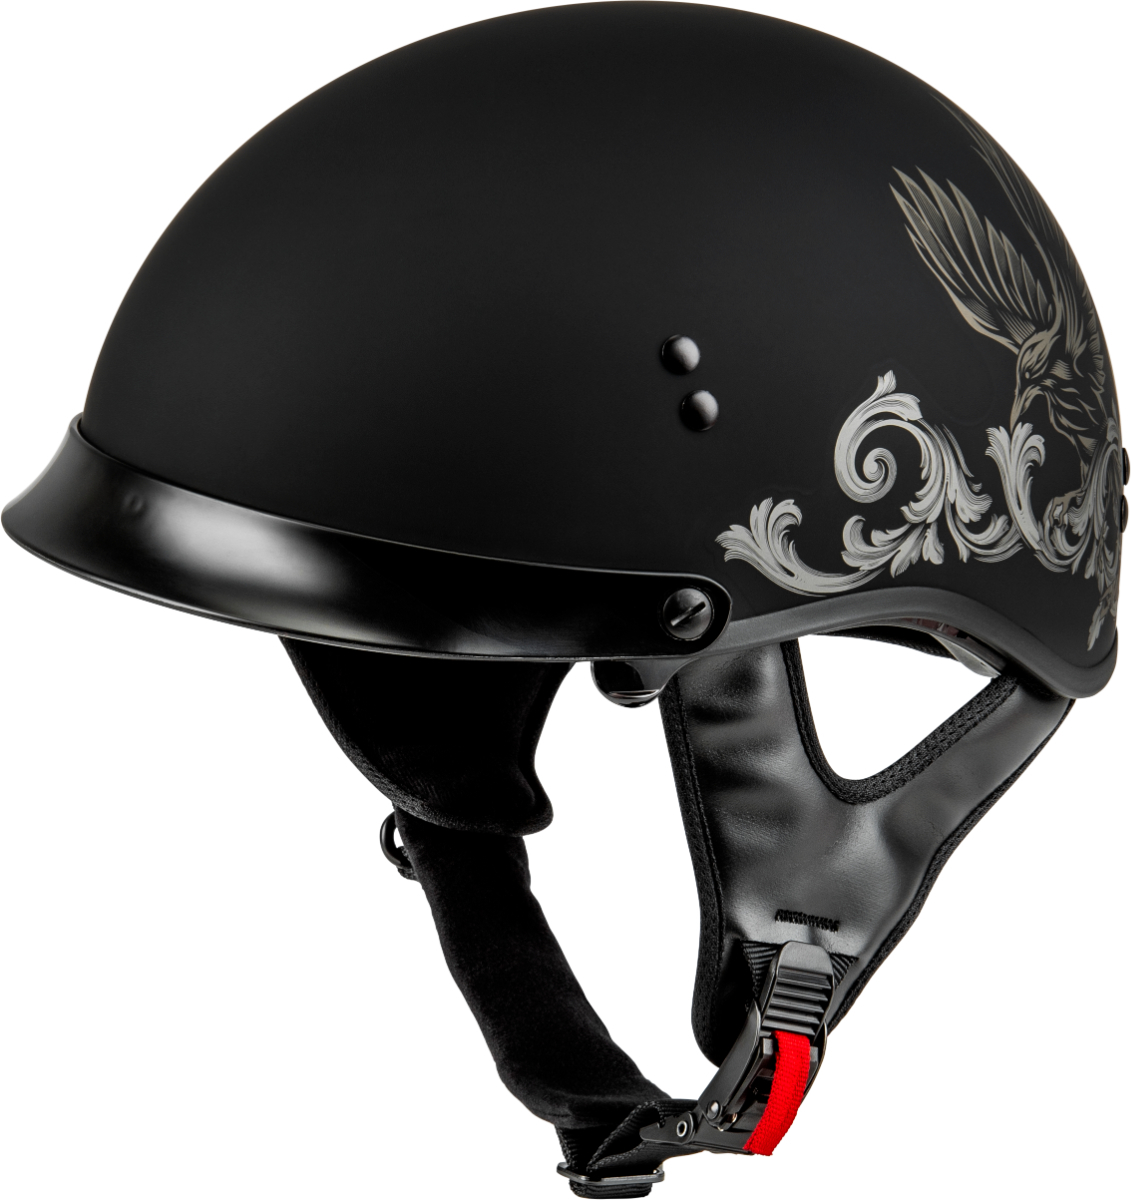 サイズXXL GMAX HH-65 CORVUS ヘルメット W/ PEAK 艶消し 黒/TAN 2X